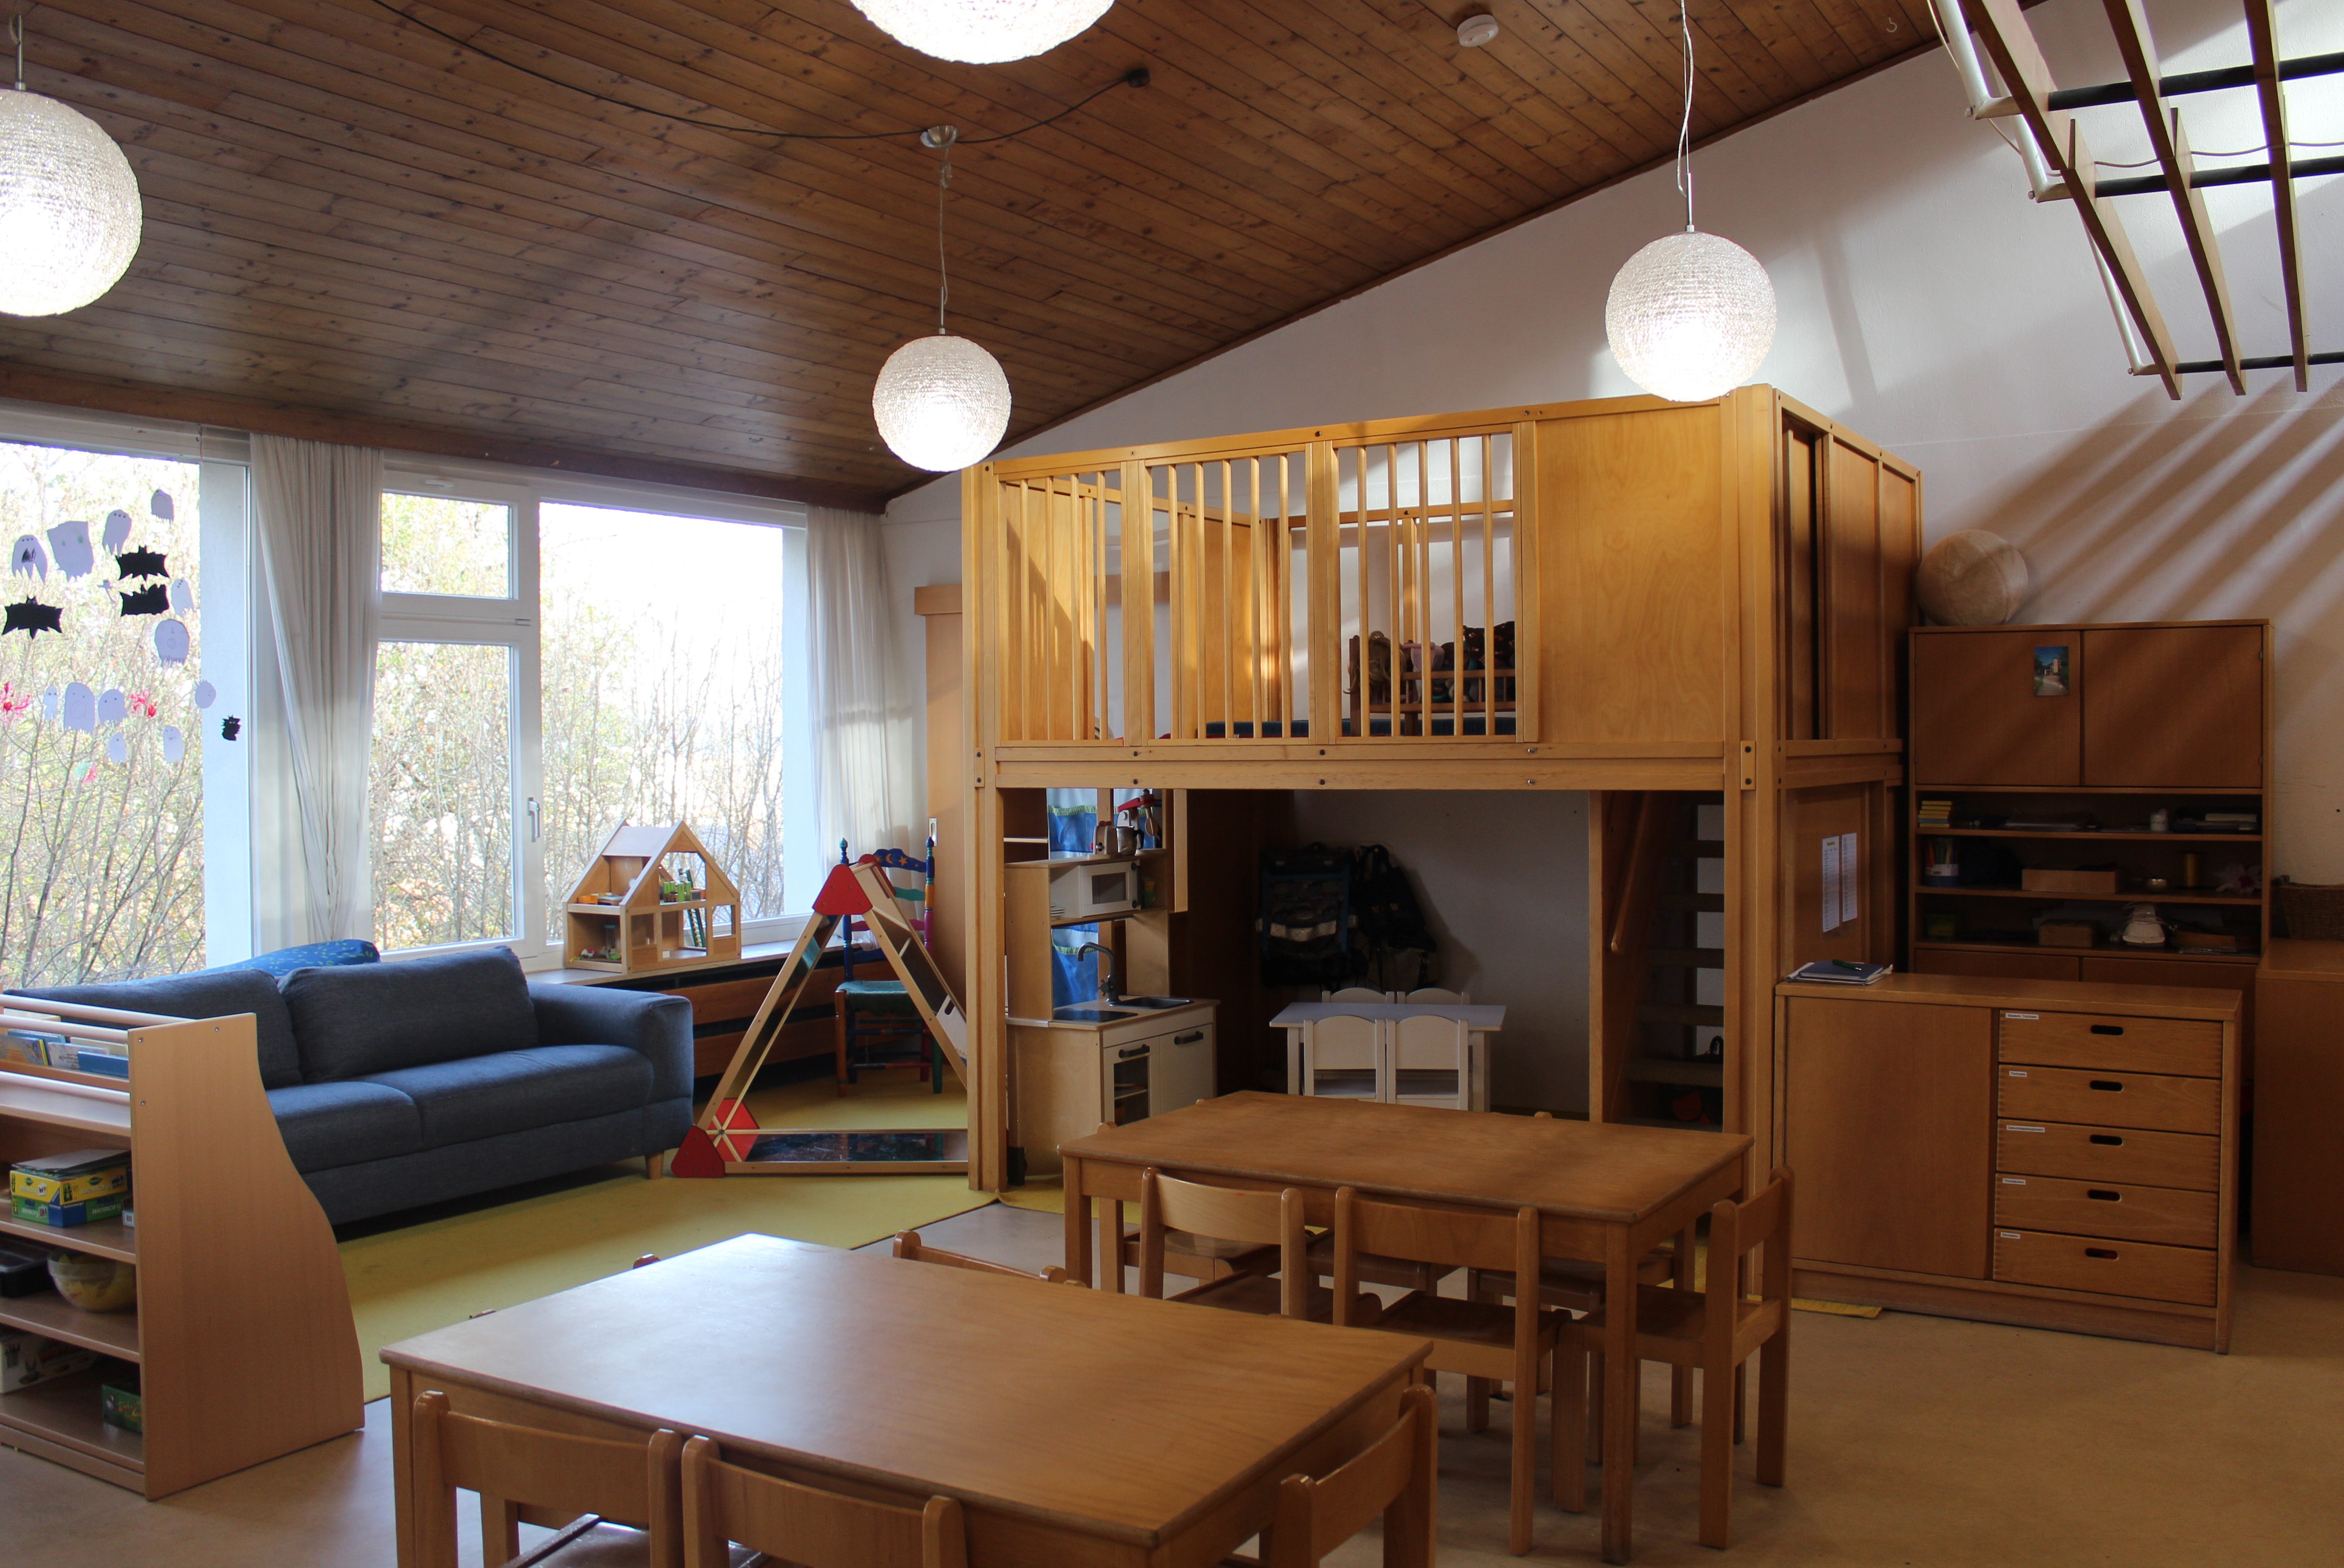 Auf dem Bild ist links am Fenster ein blaues Sofa zu sehen, Eine Kinderküche mit Kindertisch steht im unteren Bereich eines zweistöckigen Spielhauses. Davor stehen 2 Tische mit Stühlen.